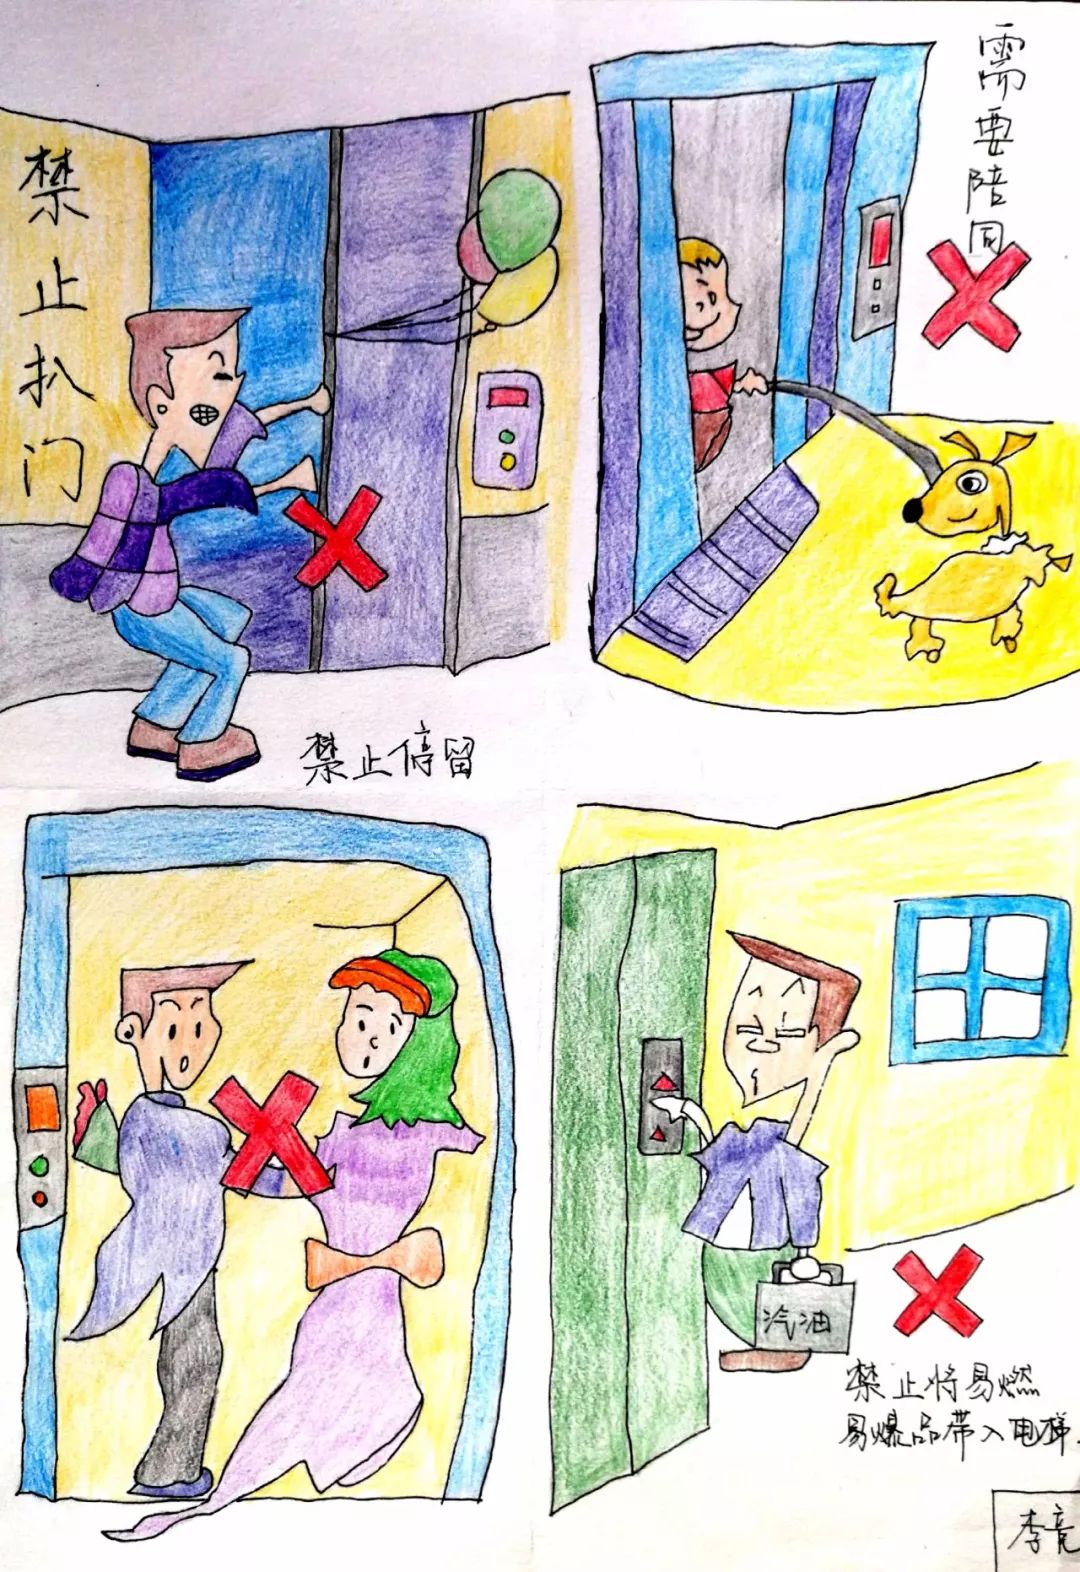 【艺安全】青岛艺术学校"生命至上,健康成长,安全乘梯,和谐万家"漫画